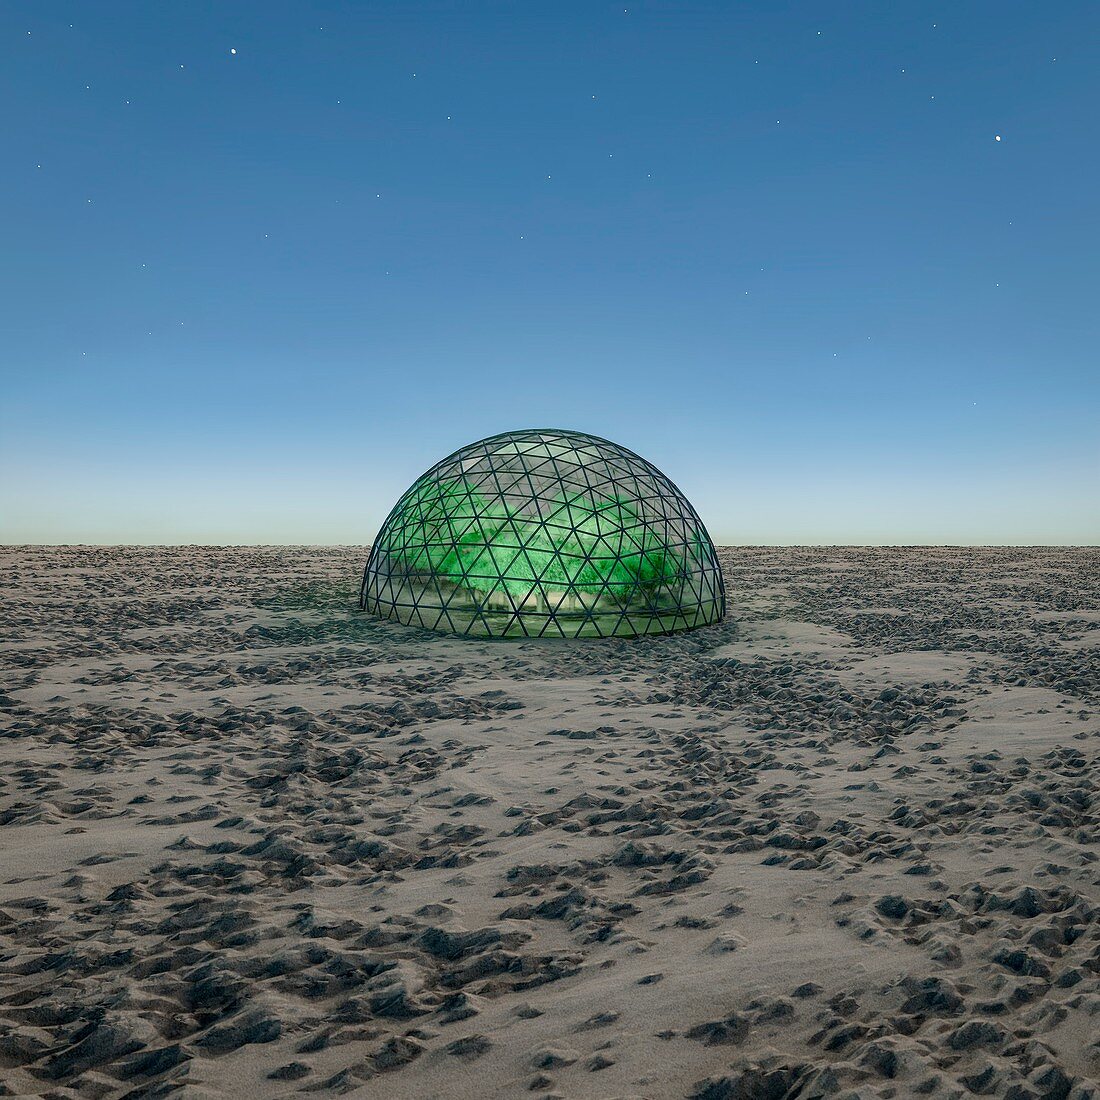 Geodesic dome in desert,illustration